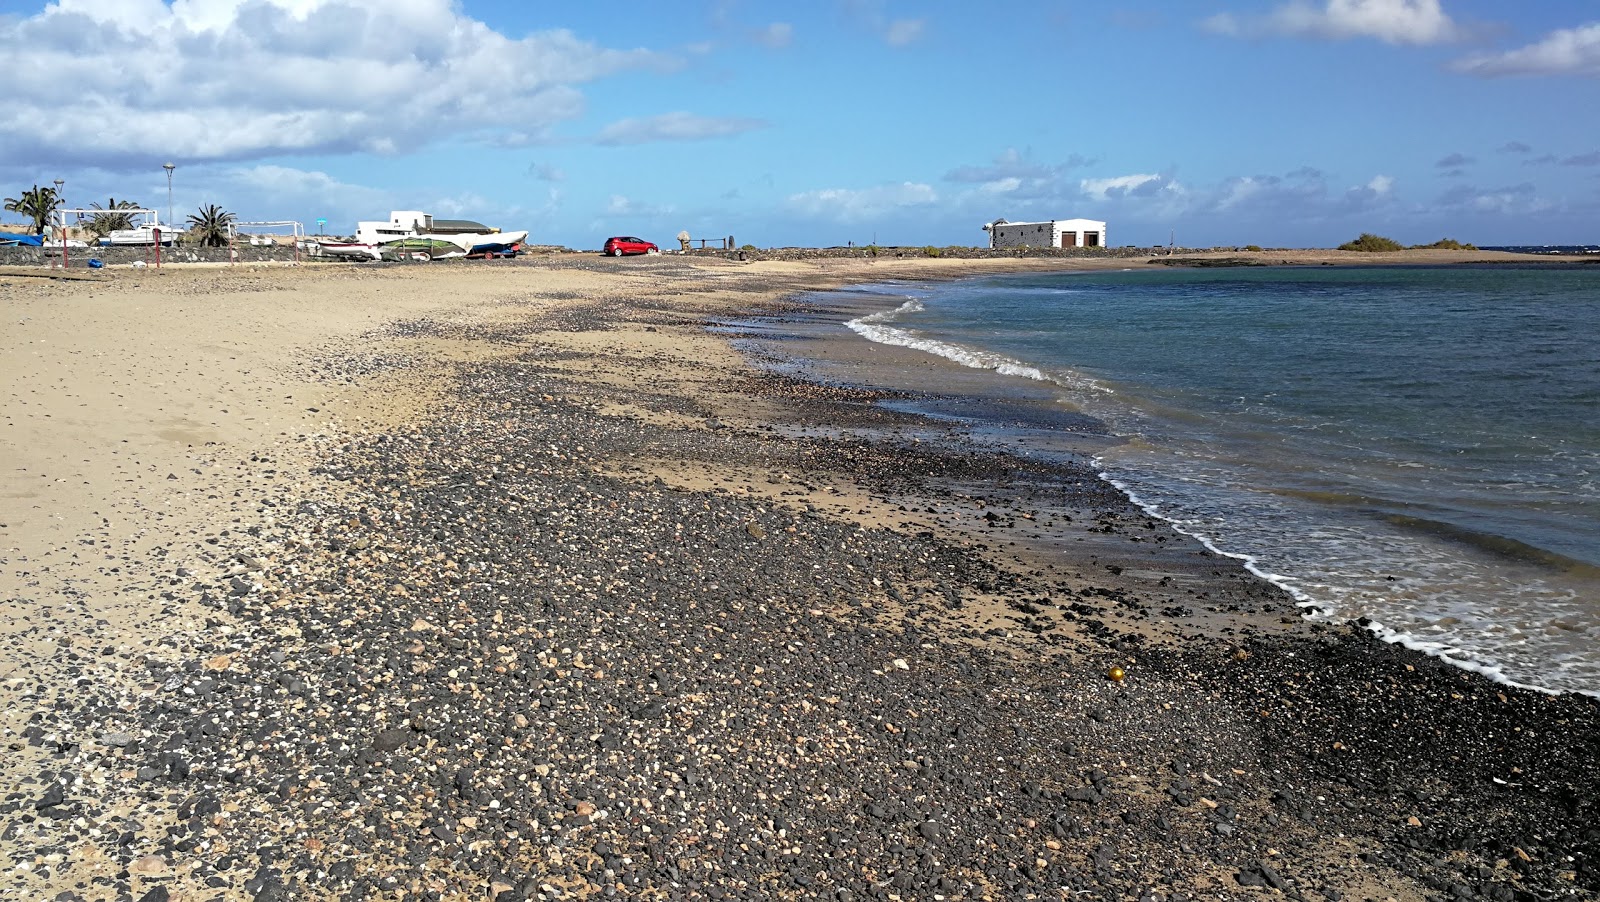 Playa del Muellito'in fotoğrafı siyah kum ve çakıl yüzey ile